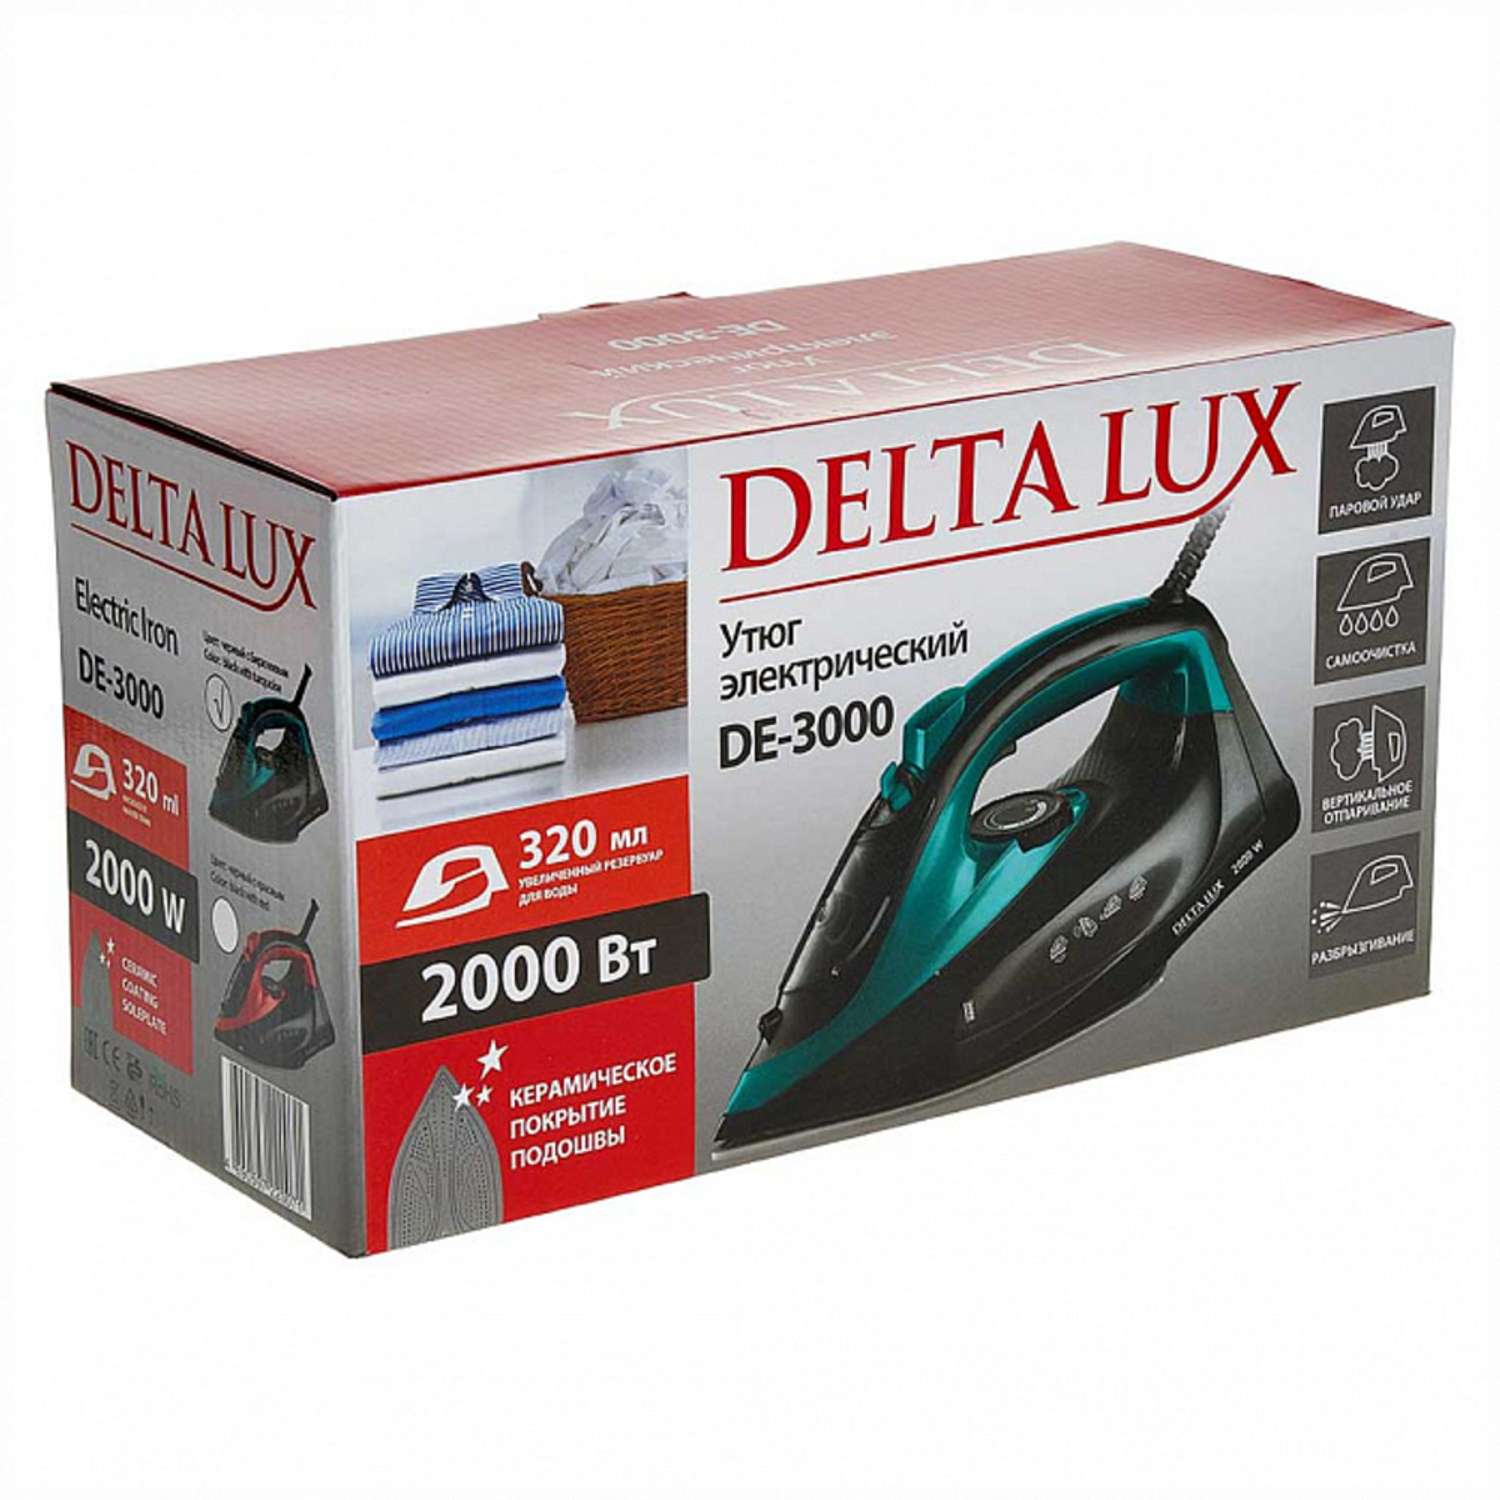 Утюг Delta Lux DE-3000 черный с бирюзовым 2000 Вт керамика самоочистка паровой удар 320 мл - фото 6